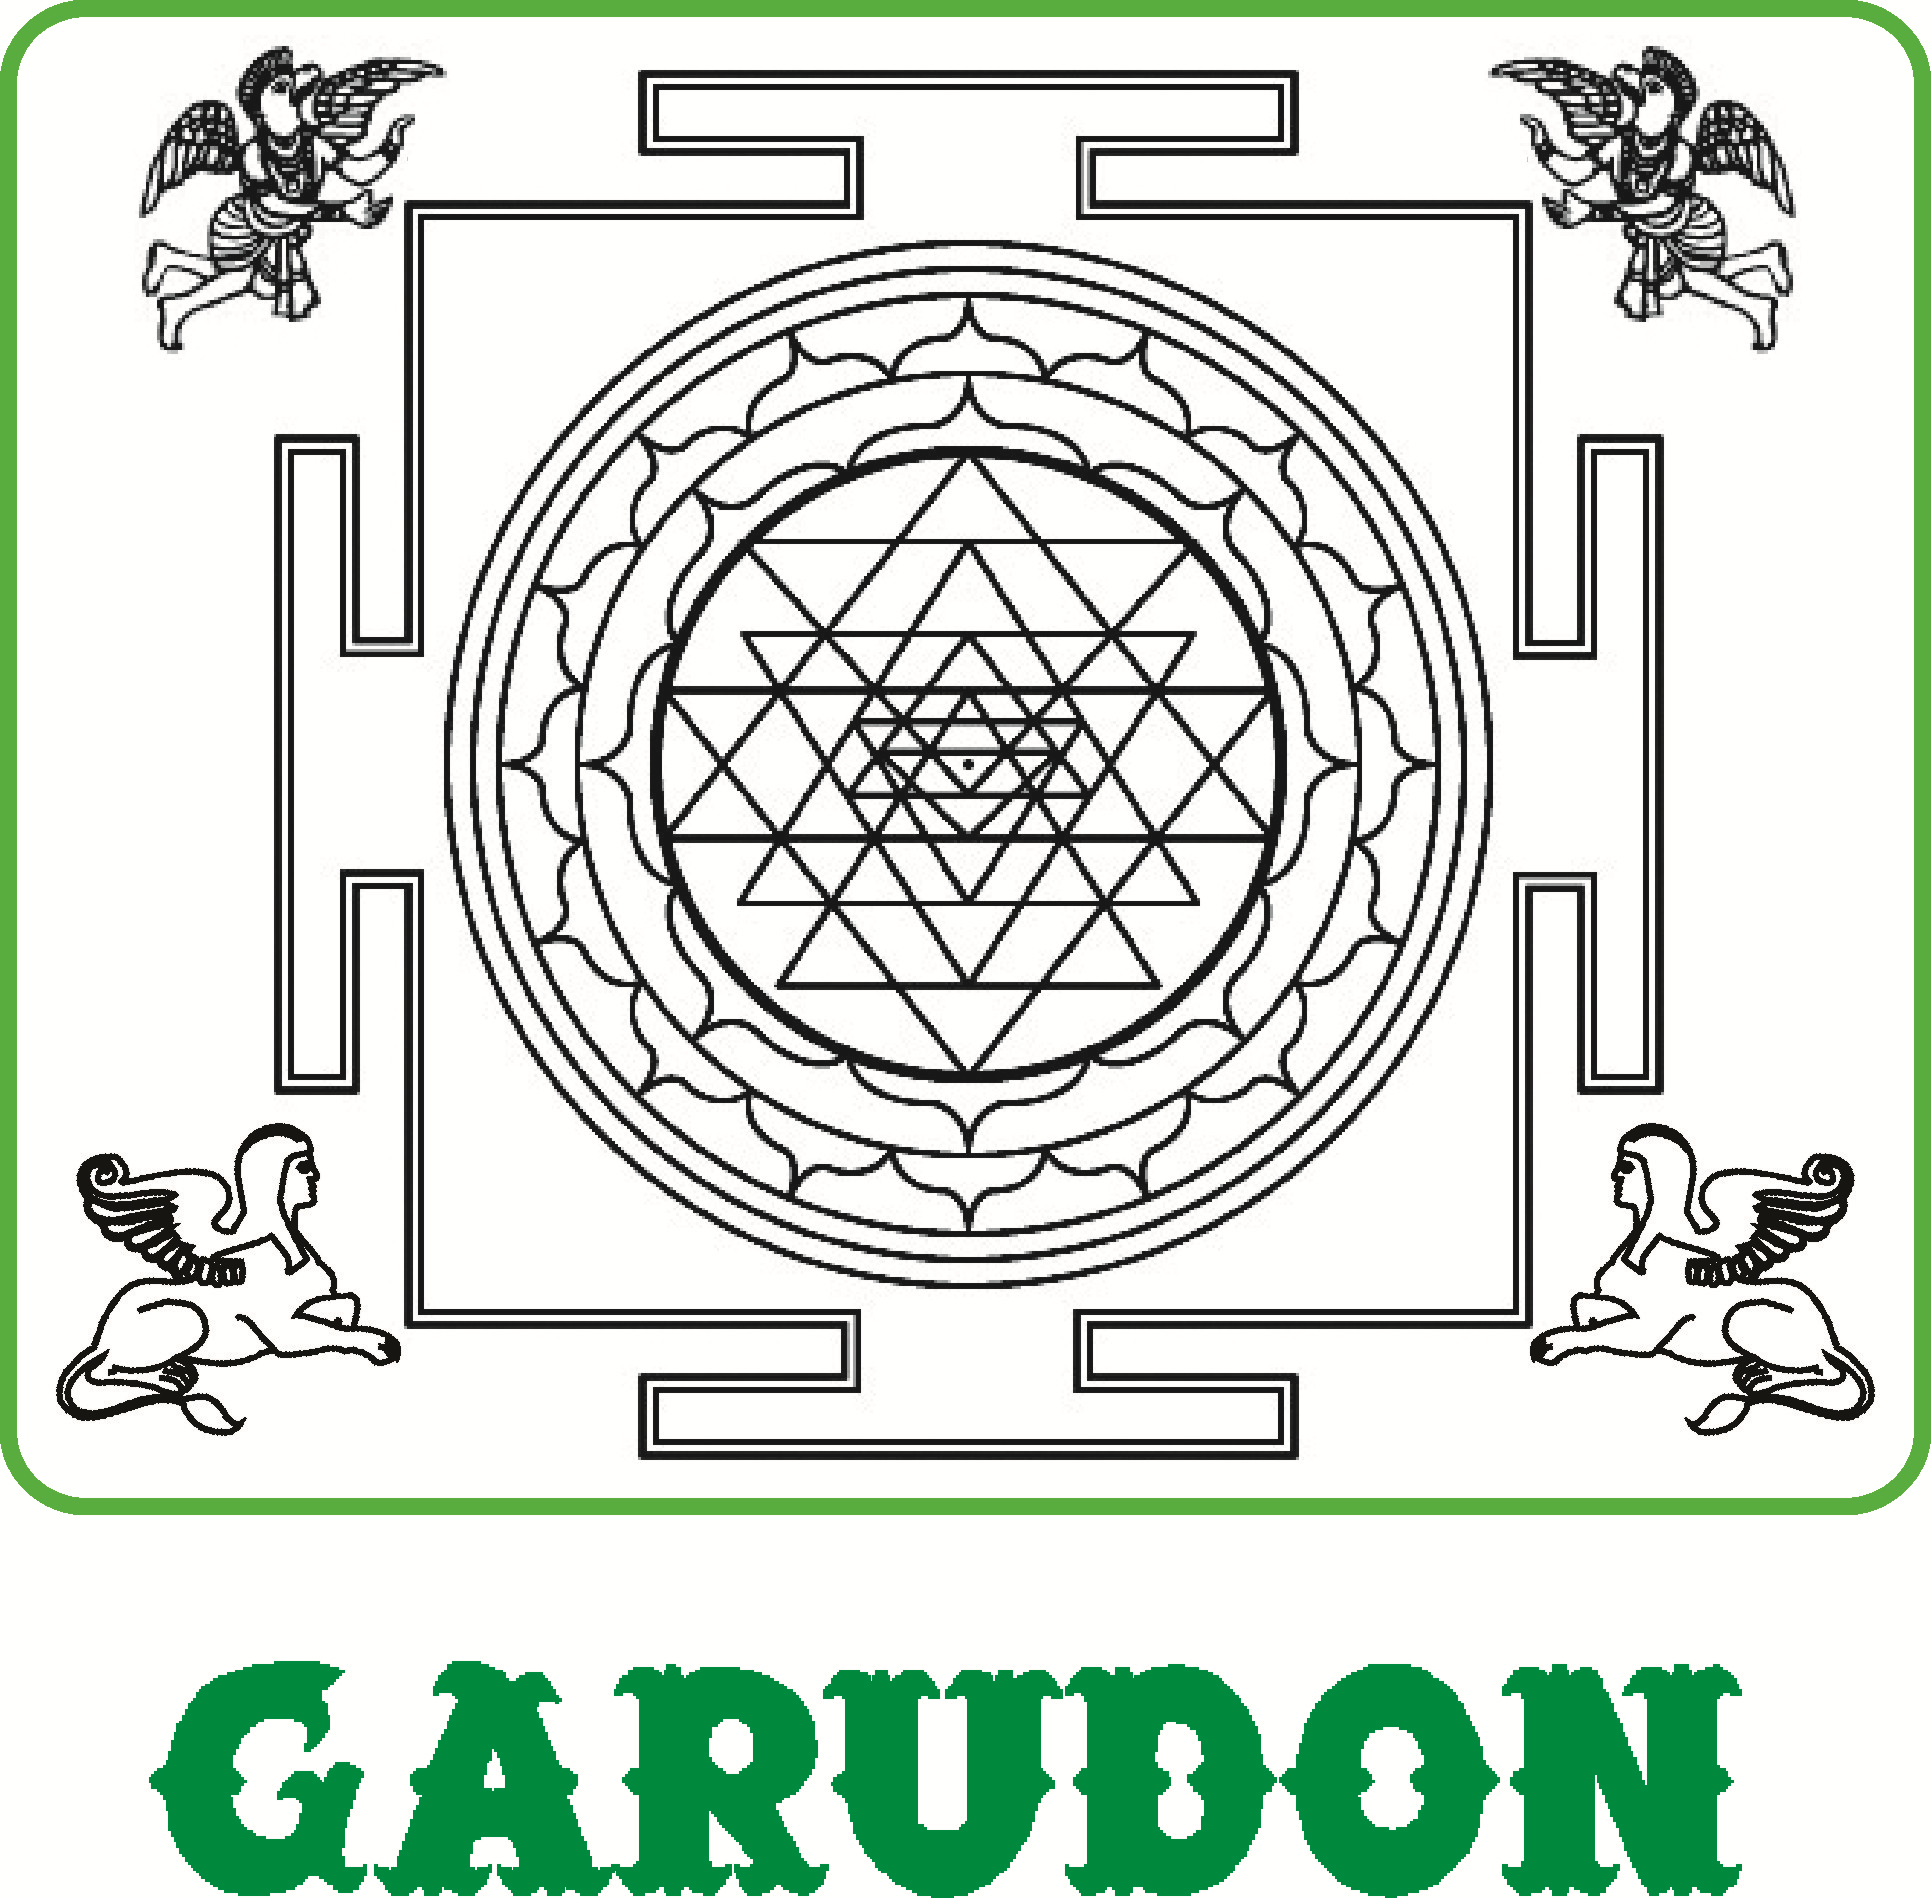 GARUDON MEDICAL SYSTEM